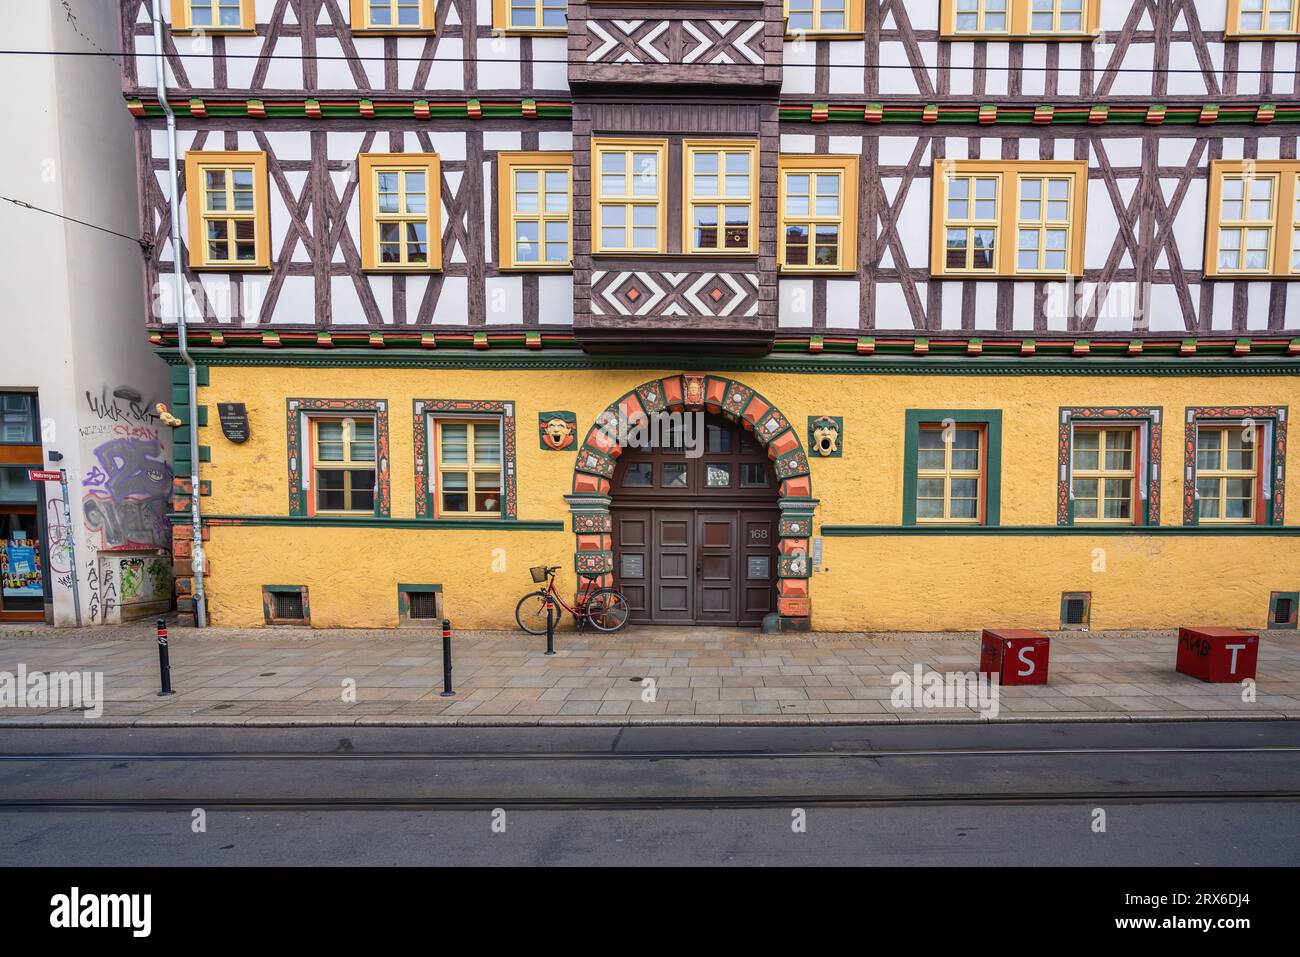 Haus zum Mohrenkopf - Erfurt, Alemania Foto de stock